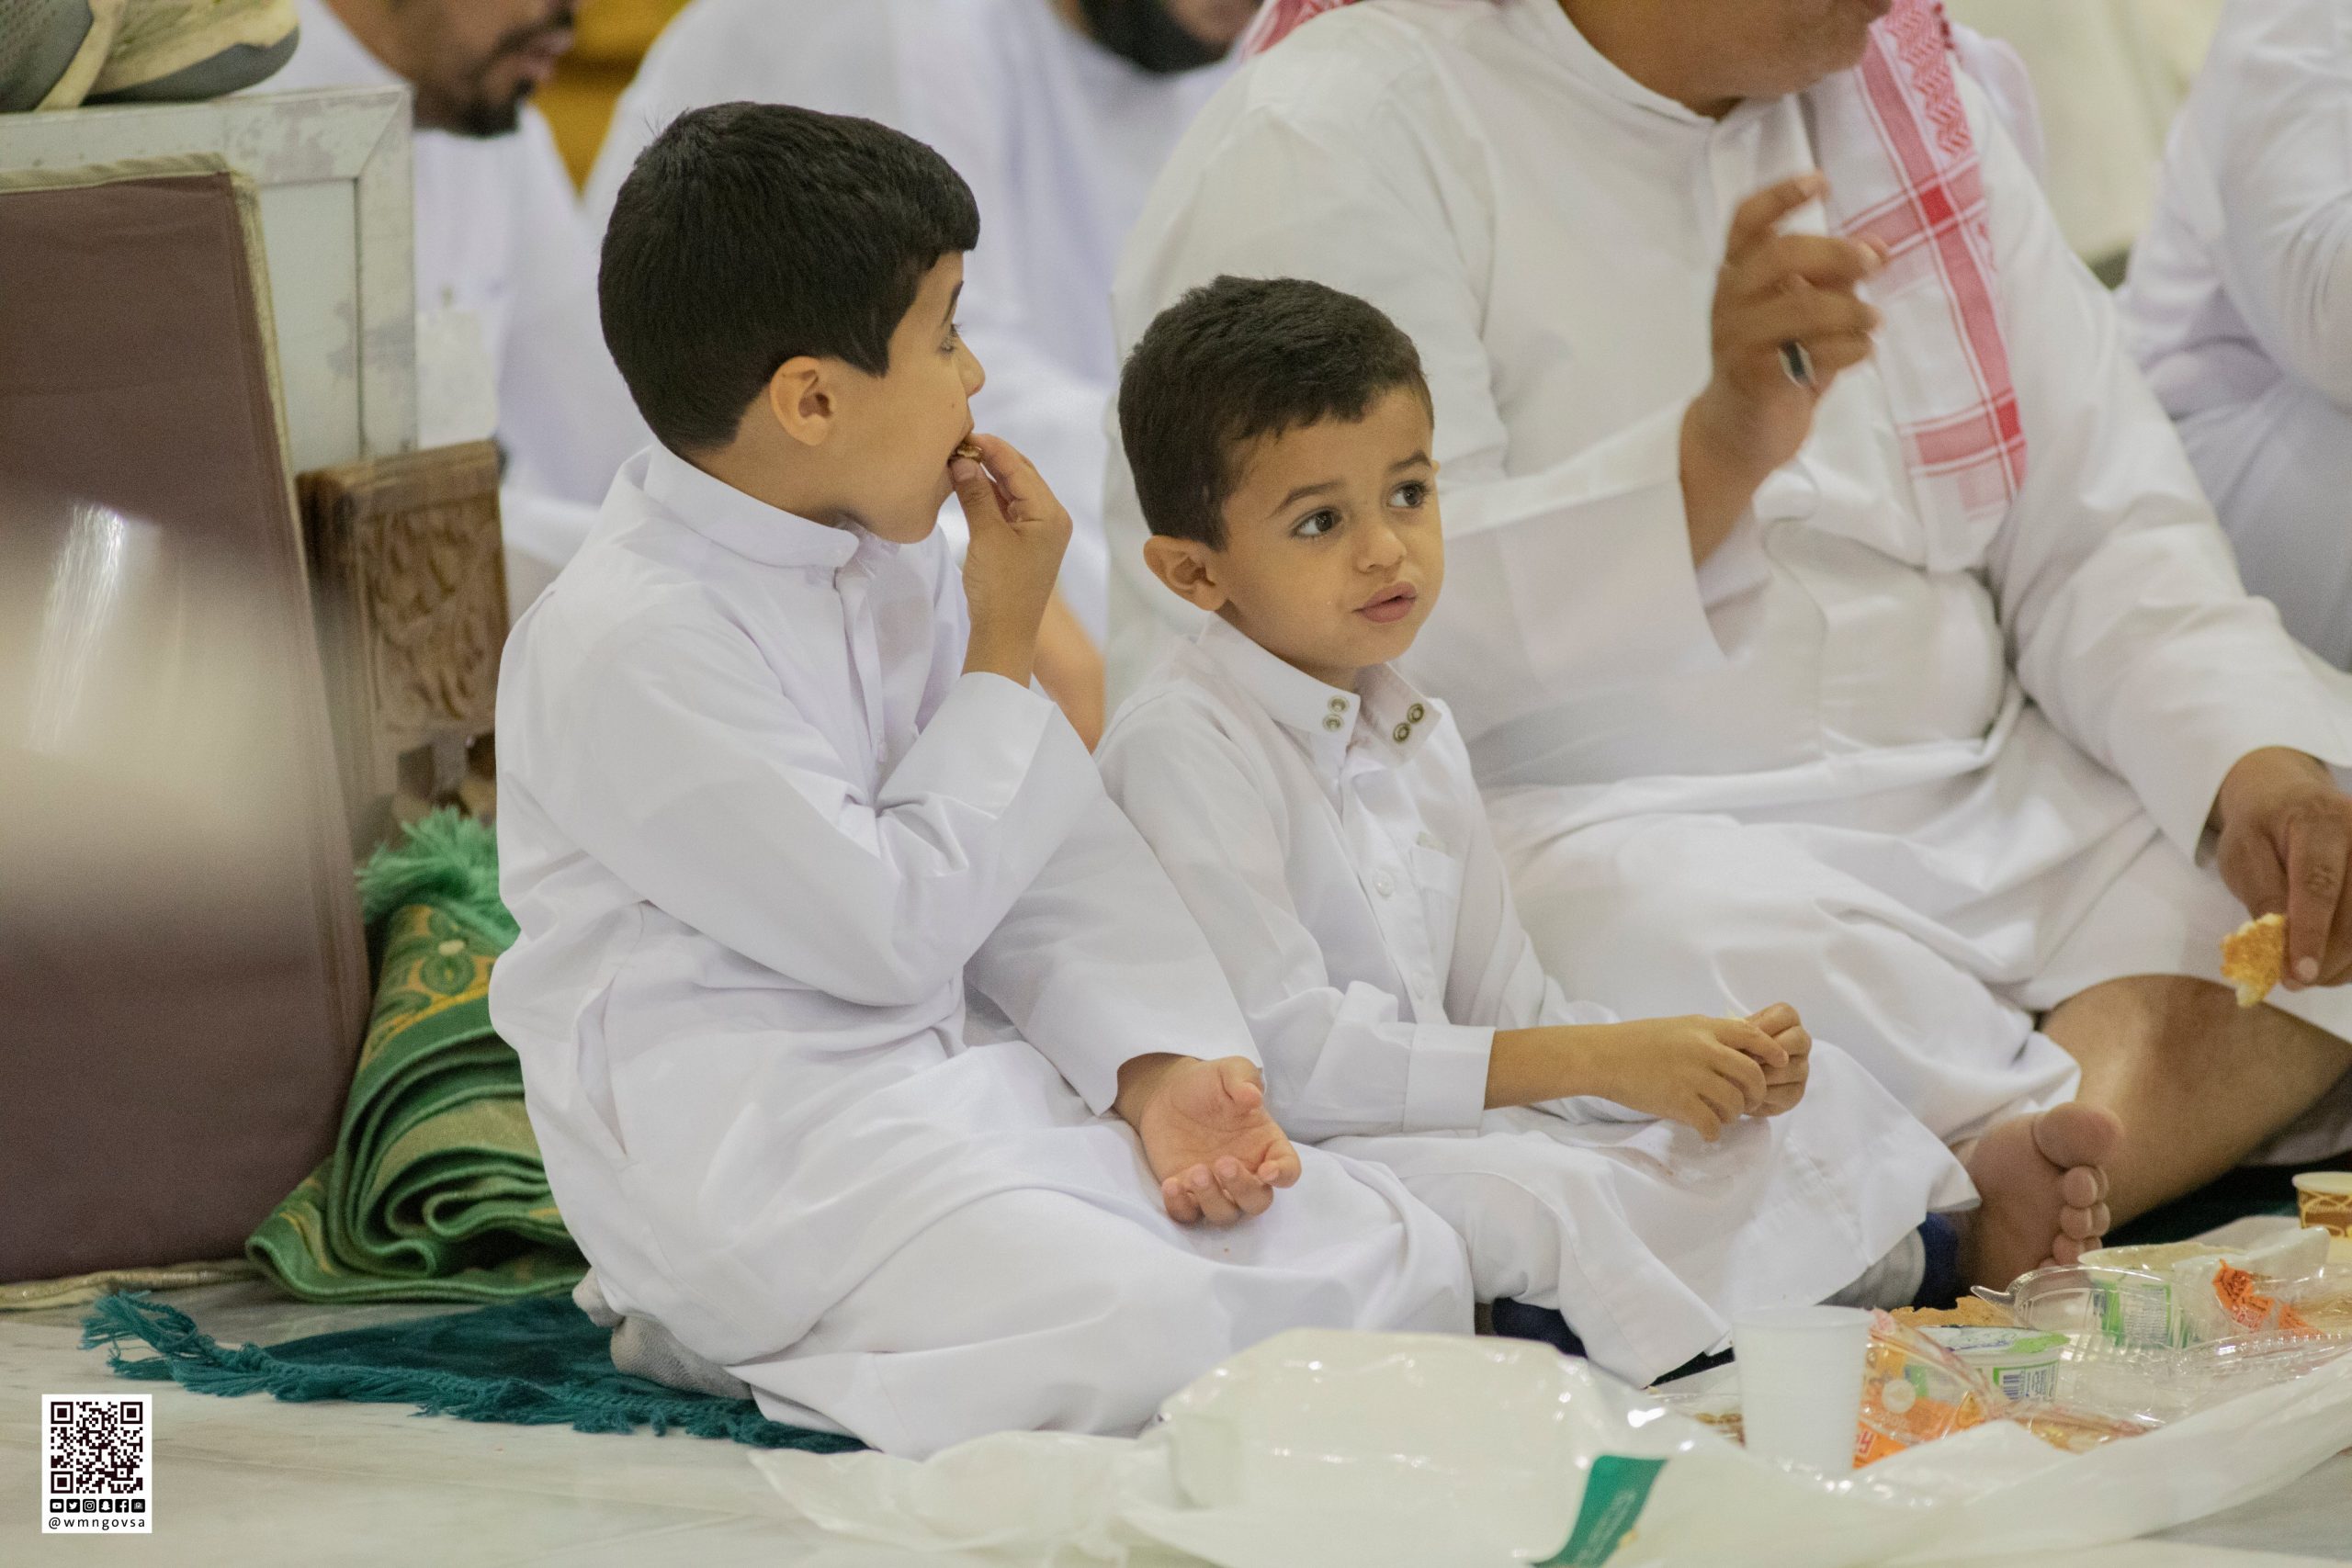 مشاهد من إفطار الصائمين في المسجد النبوي